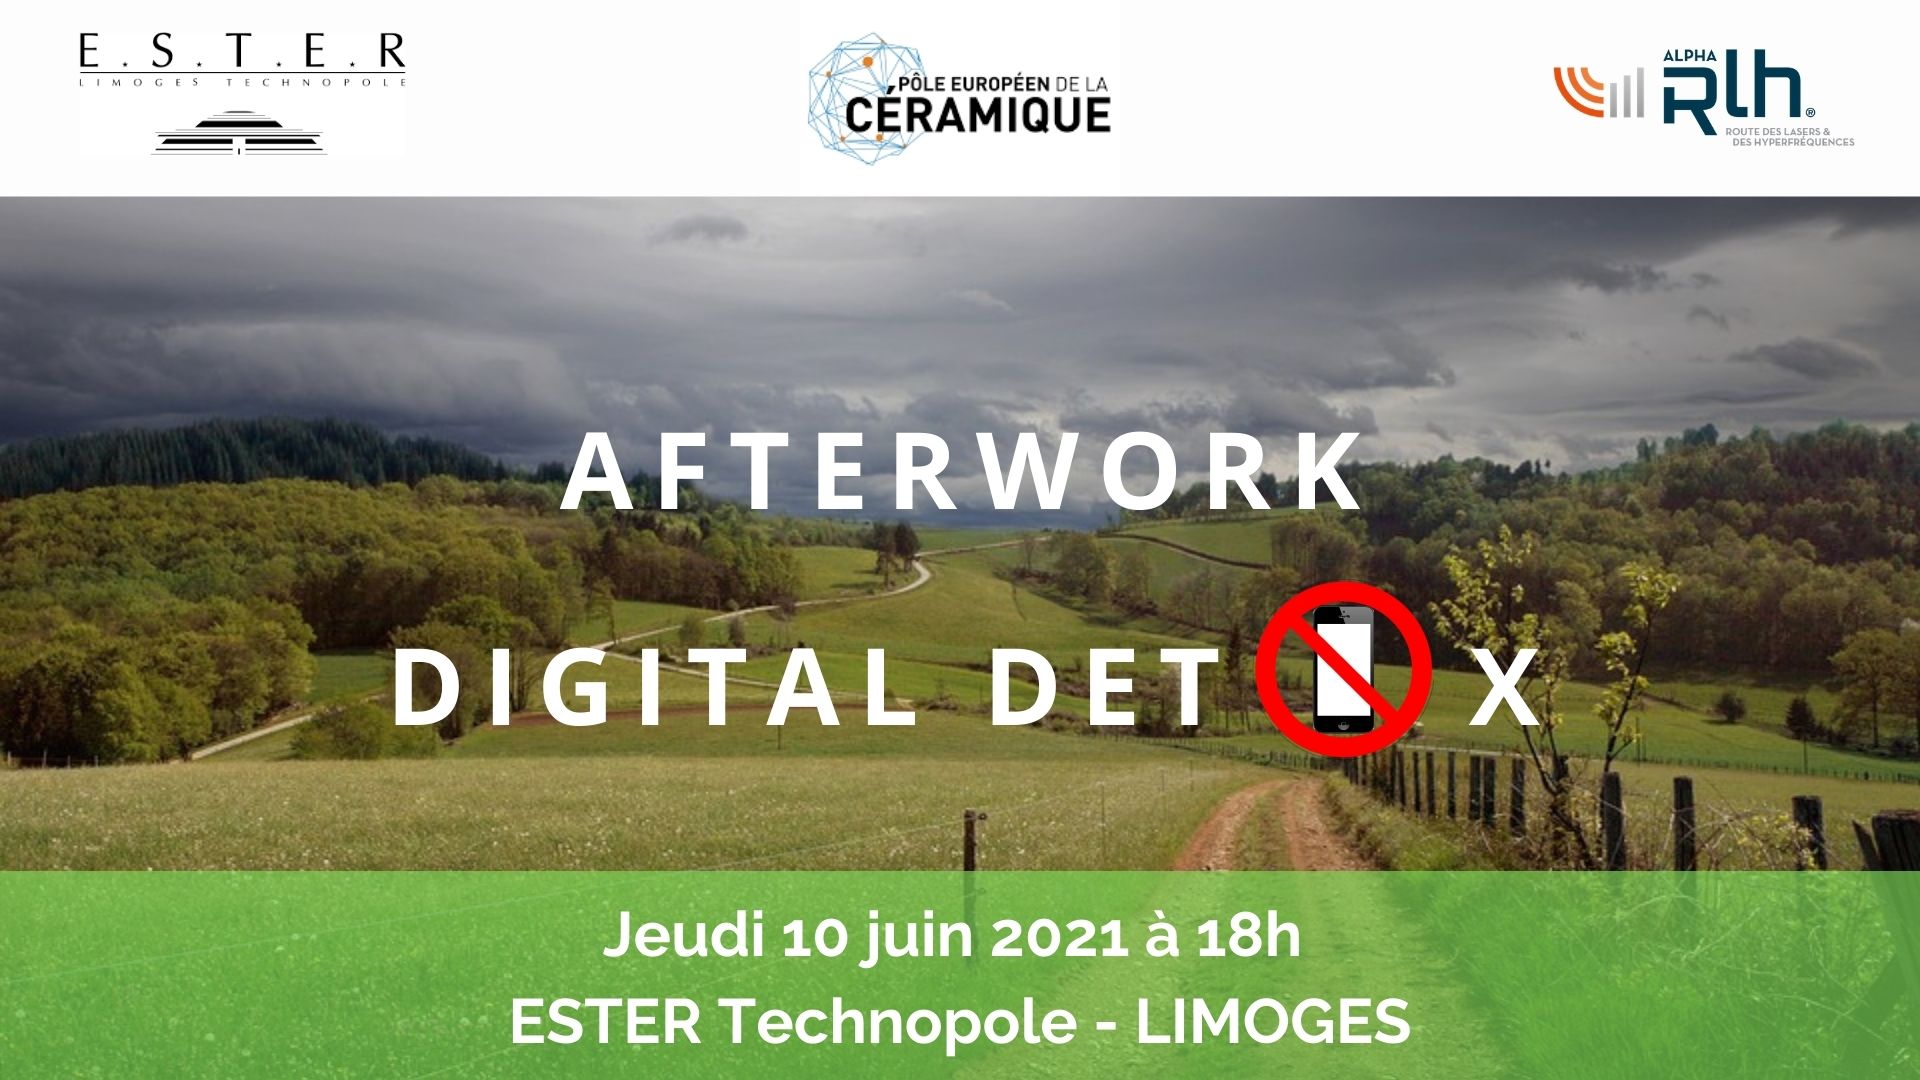 Illustration article Afterwork Digital Detox le 10 juin 2021 à Limoges